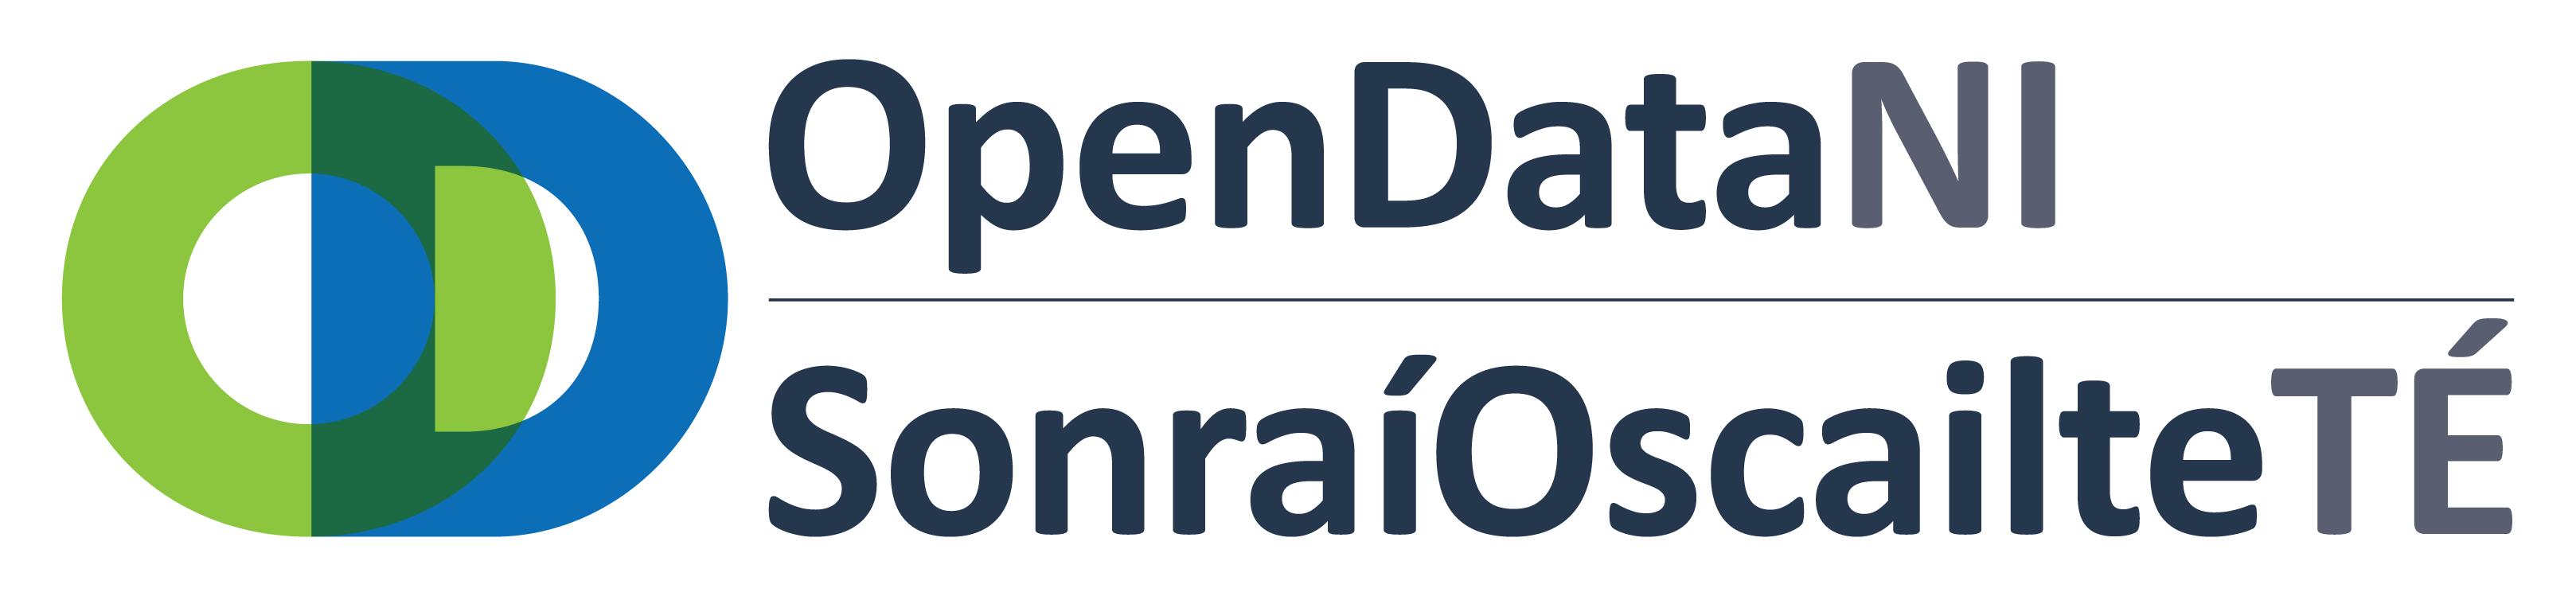 Open Data NI